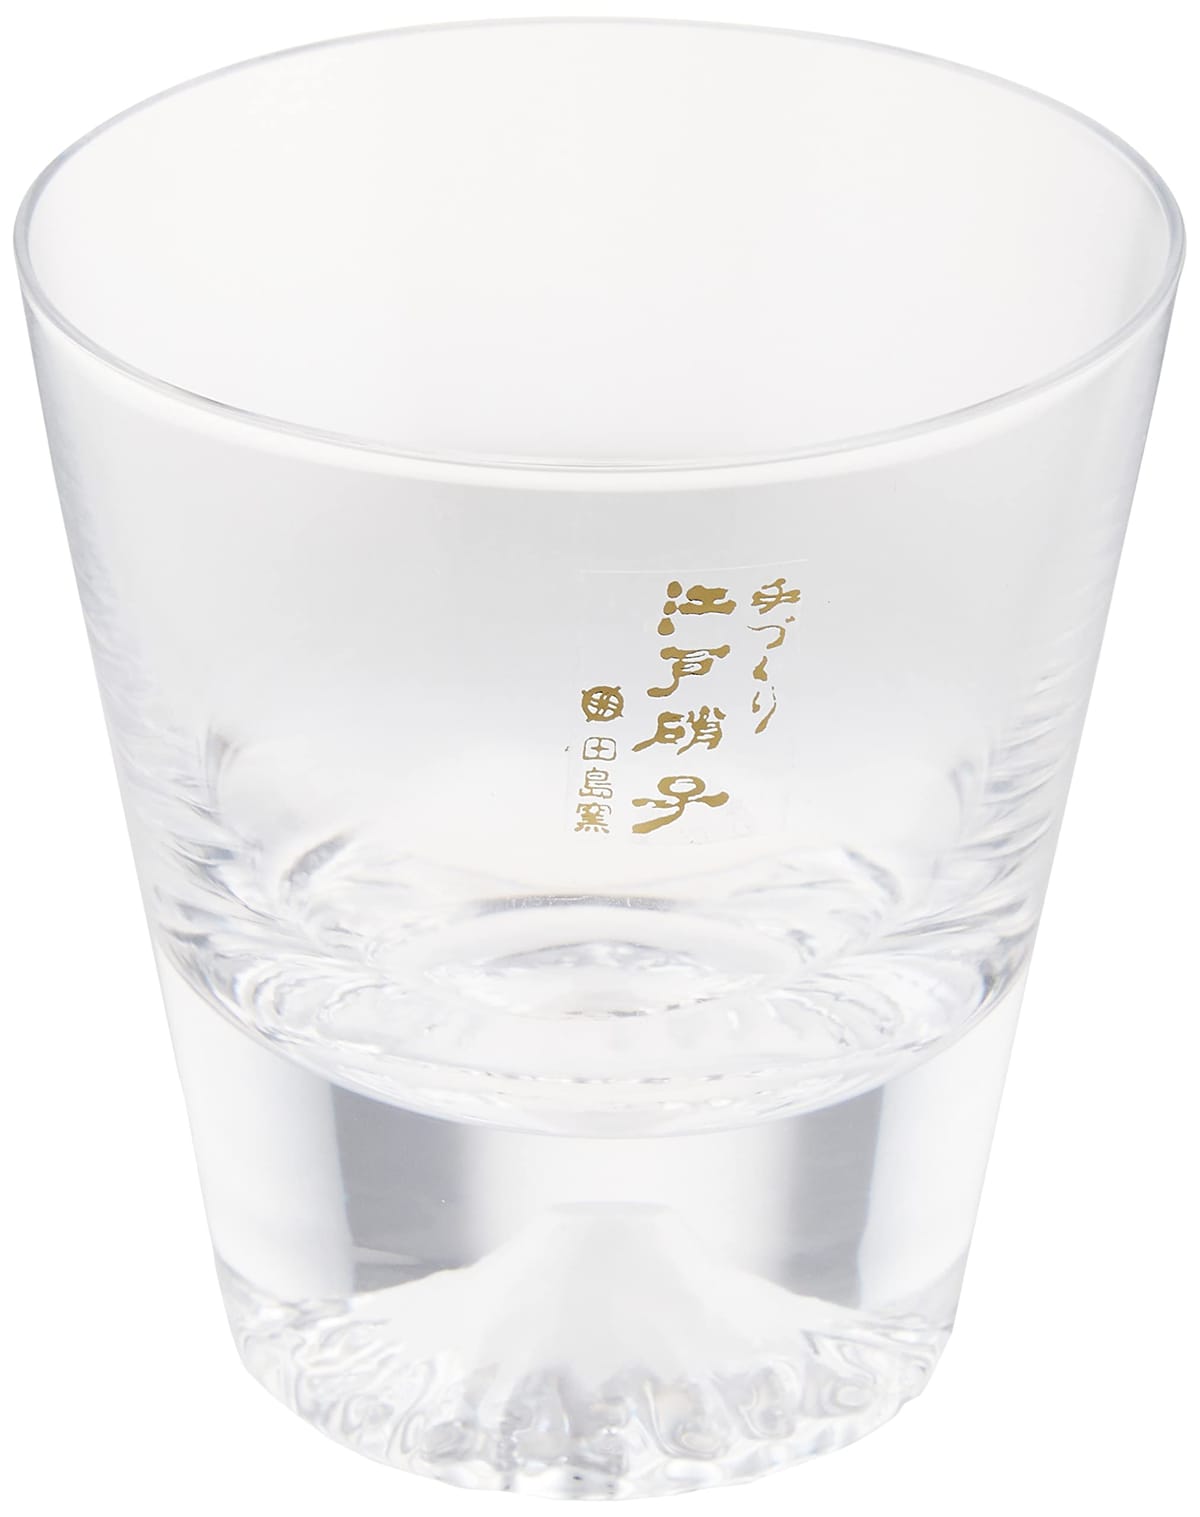 タジマガラス 富士山グラス ミニロックグラス 170ml TG20-015-MR 伝統工芸 ショットグラス ぐい呑み ギフト 父の日 結婚祝い 内祝い